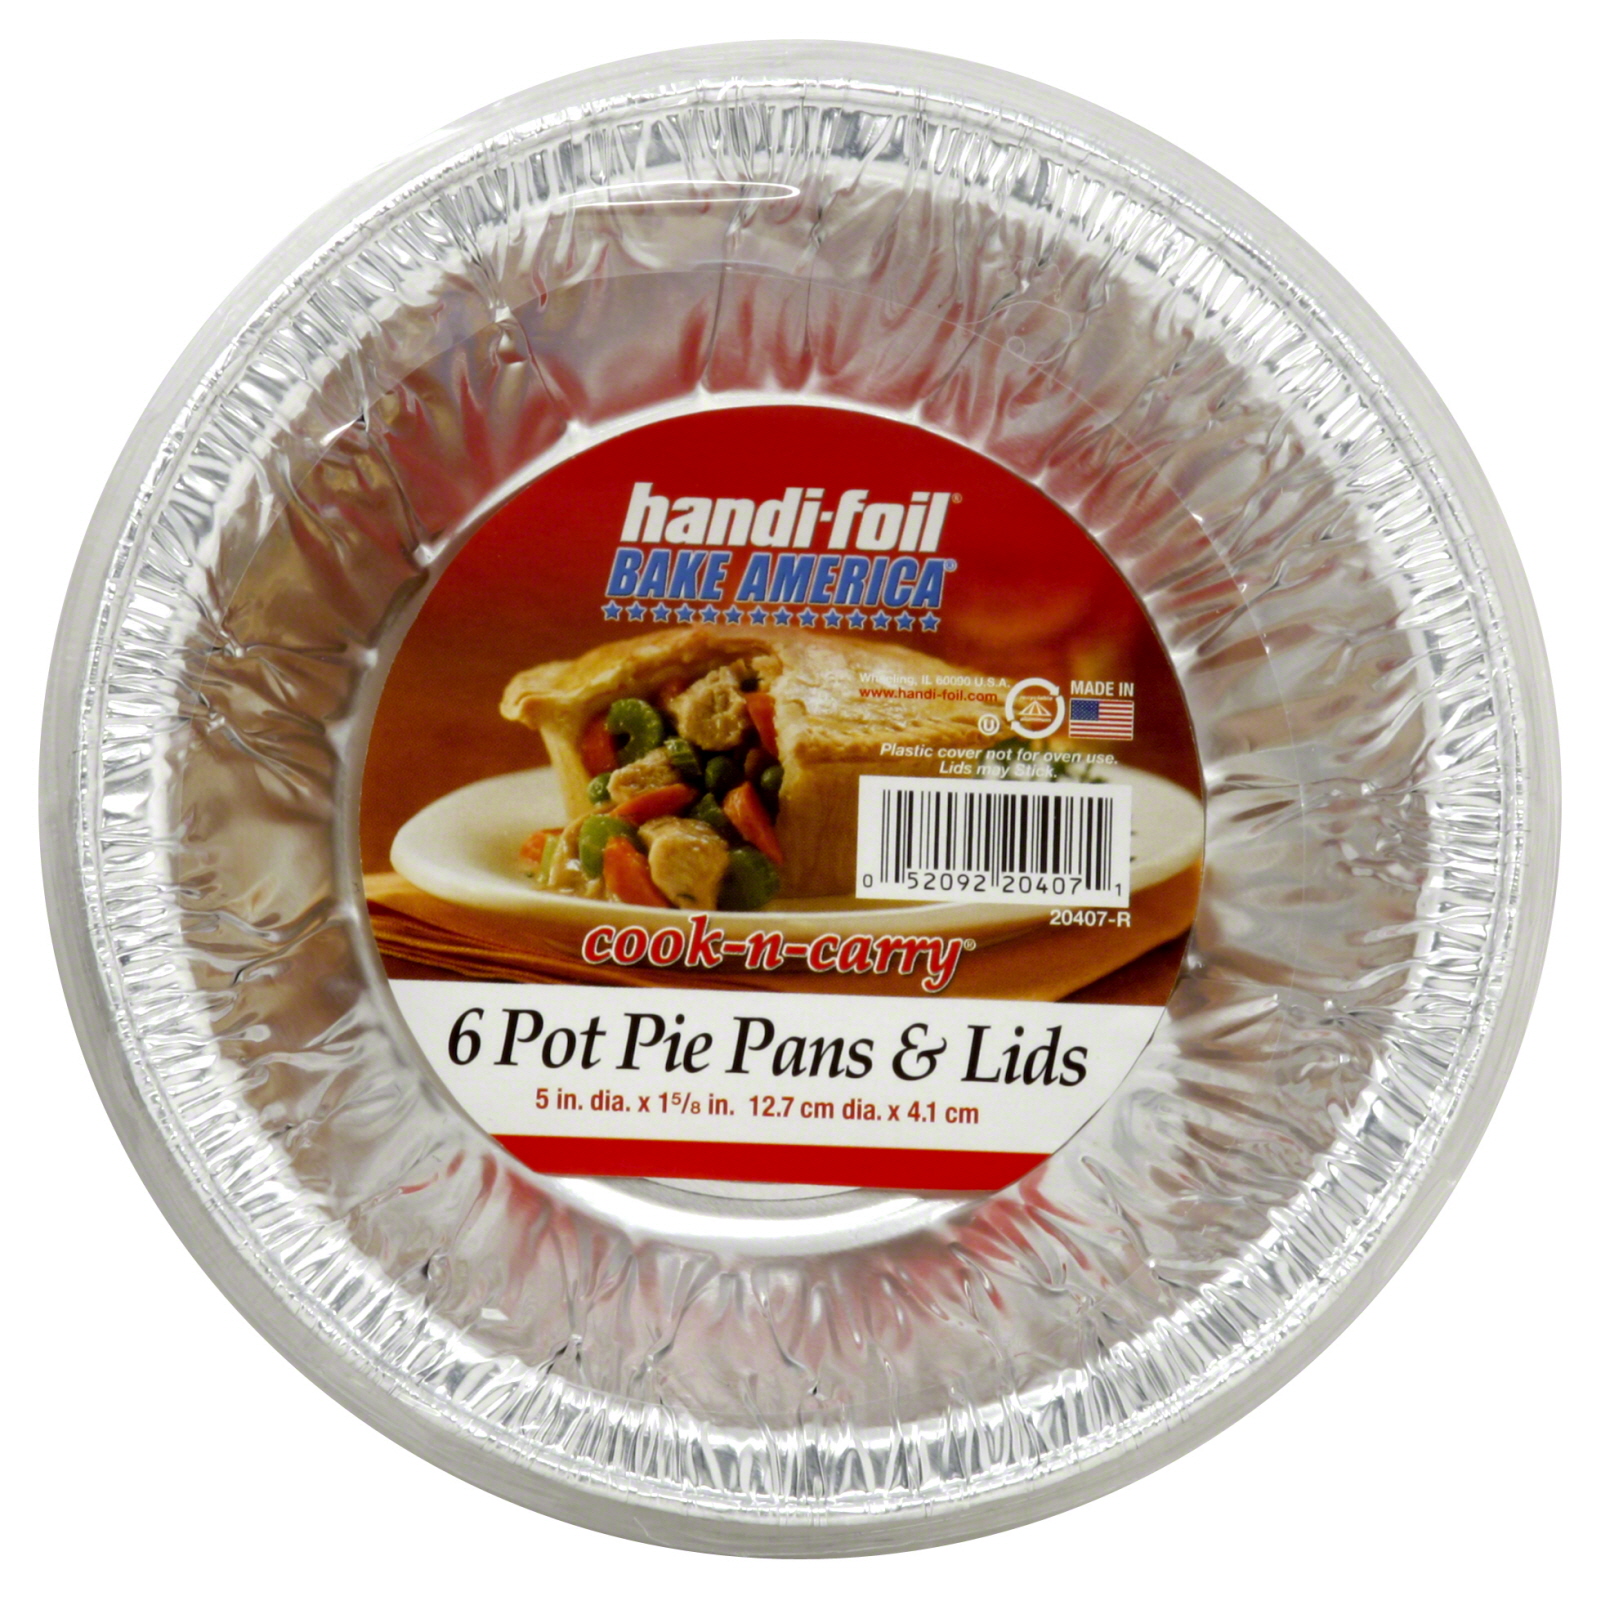 Handi-Foil Pot Pie Pans & Lids, 6 ct